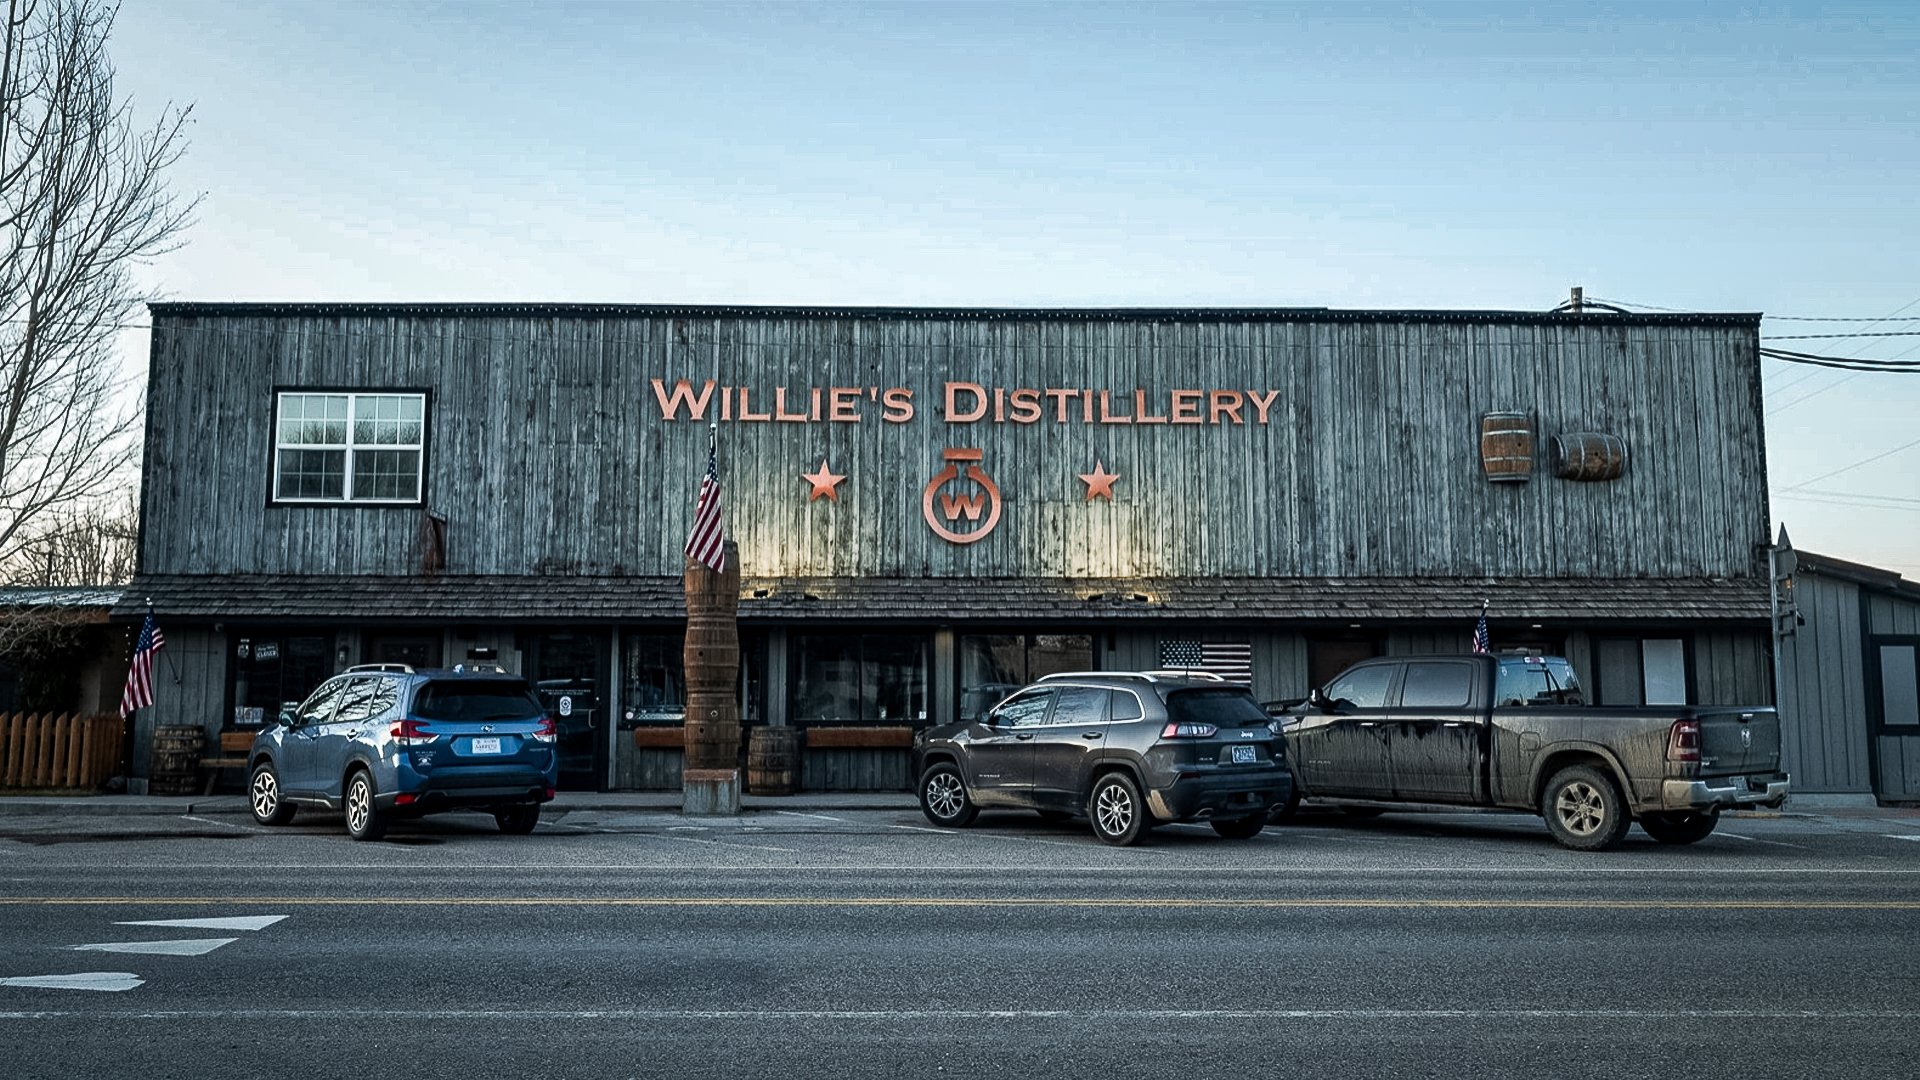 Willie's Distillery